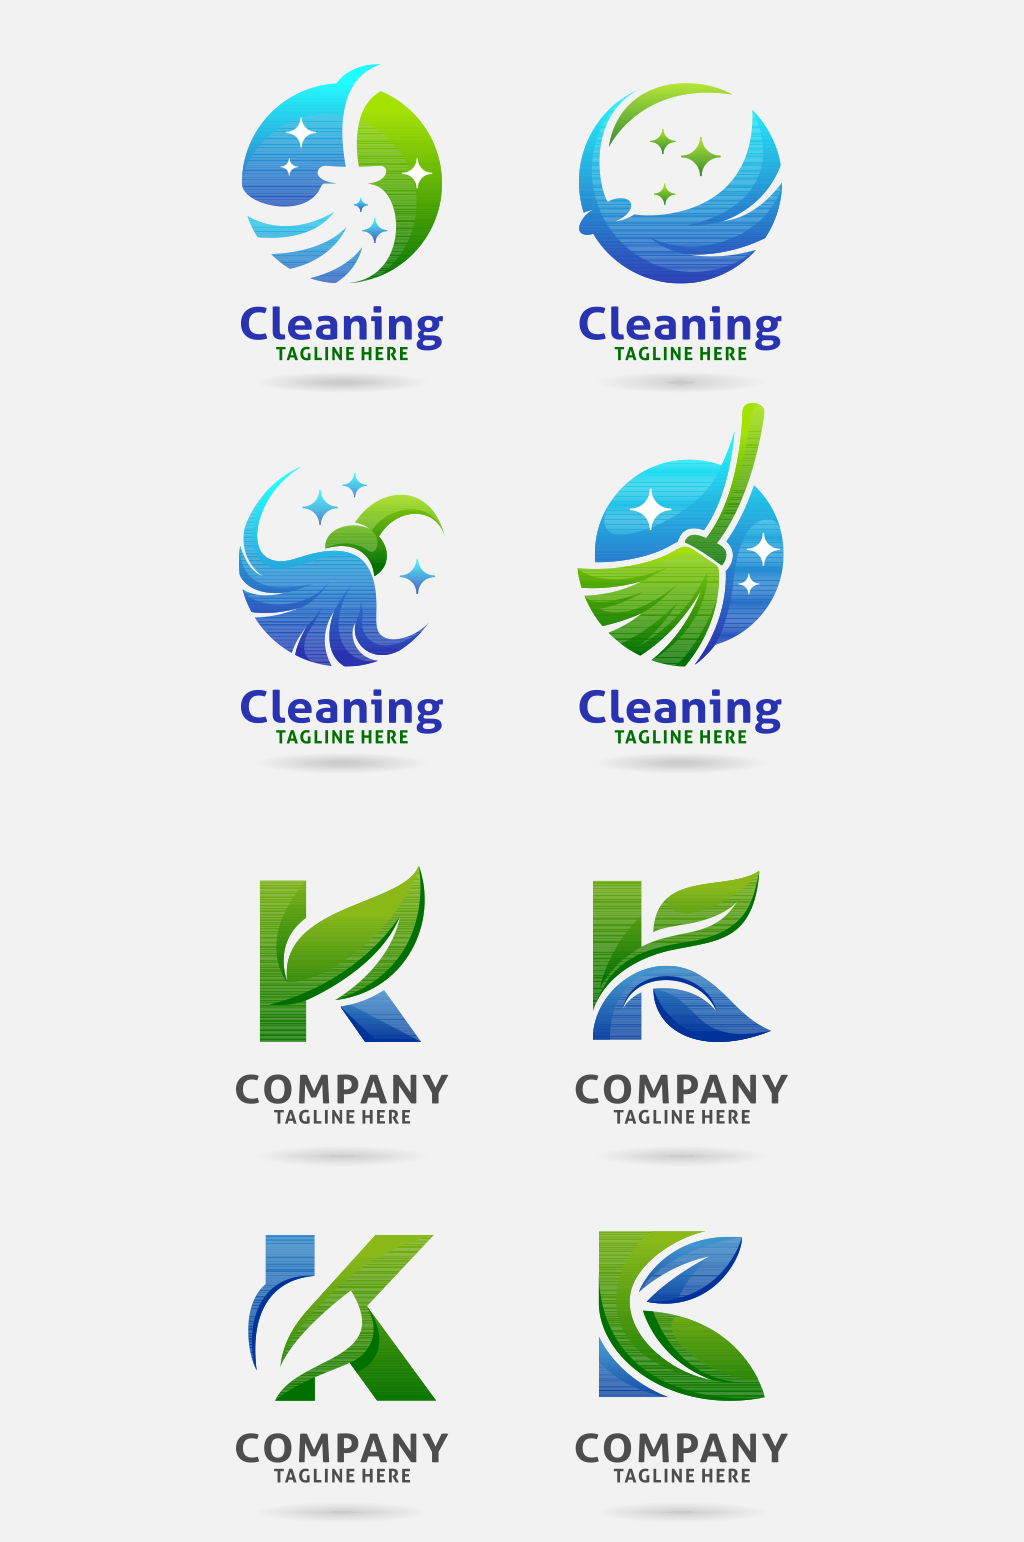 清洁公司logo设计图片